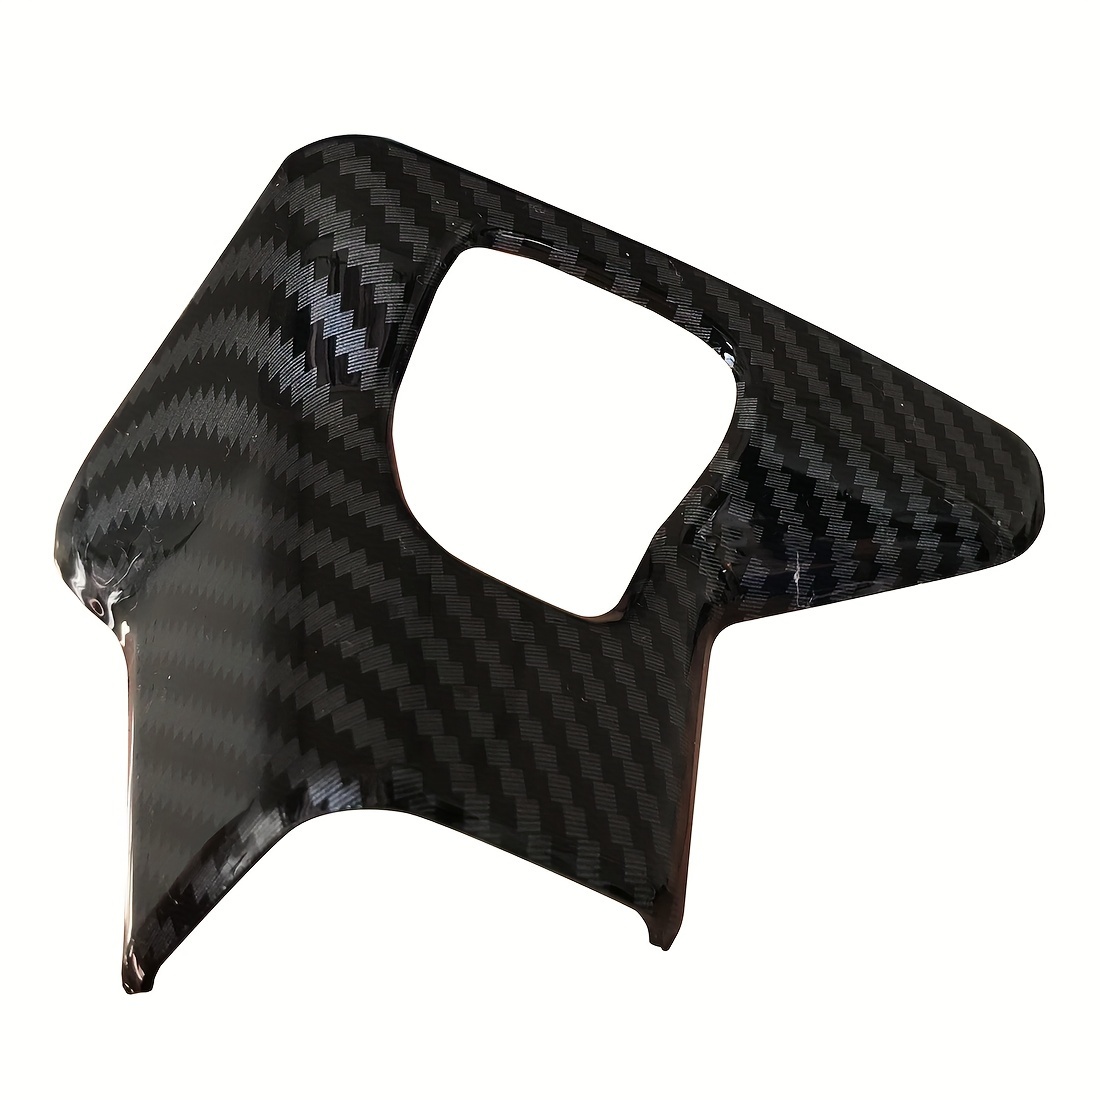 Black Real Carbon Fiber Gear Shift Knob Cover Trim For Hyundai